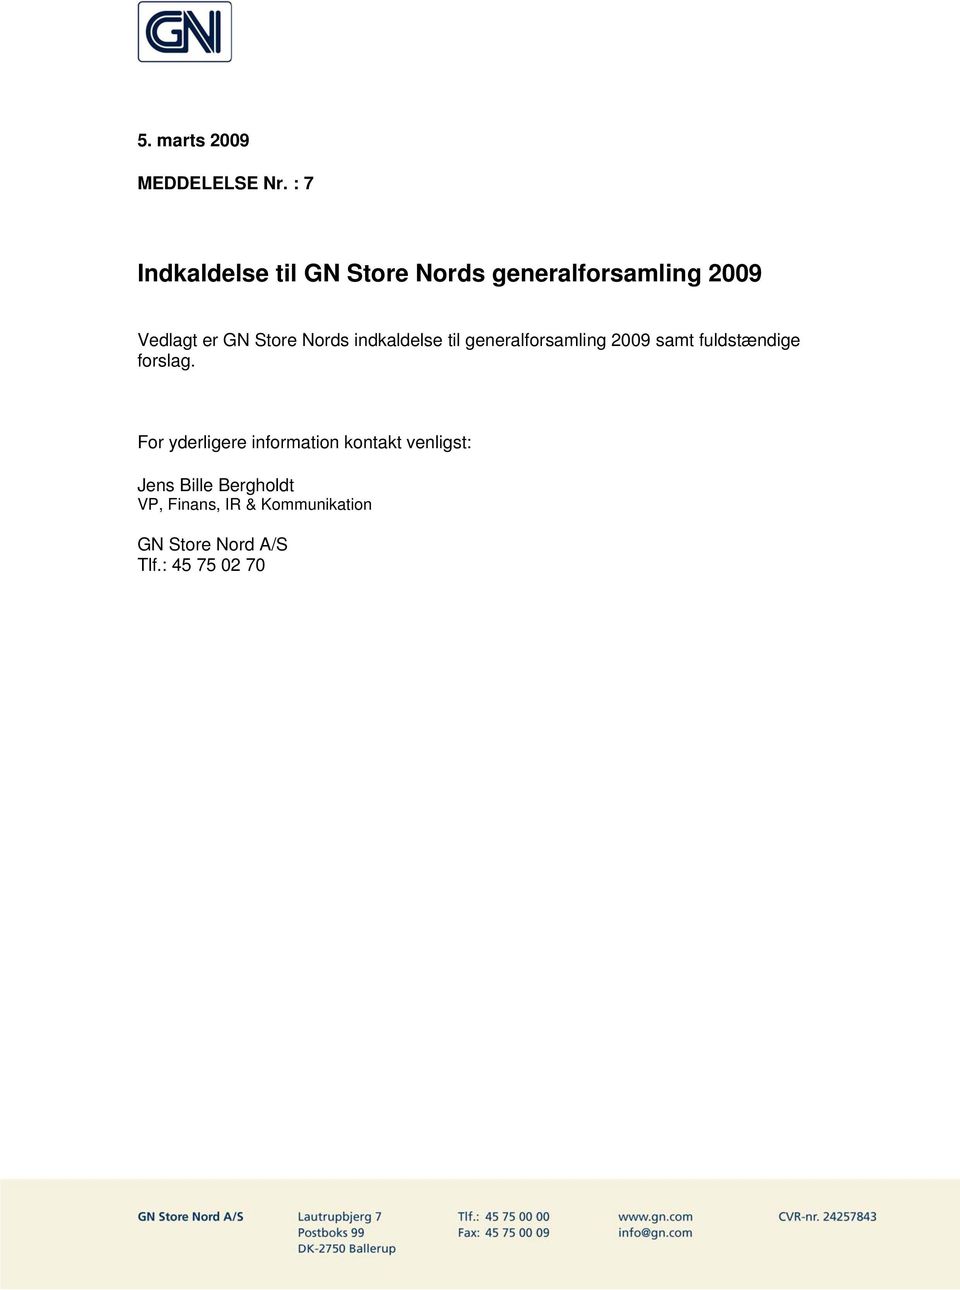 Store Nords indkaldelse til generalforsamling 2009 samt fuldstændige